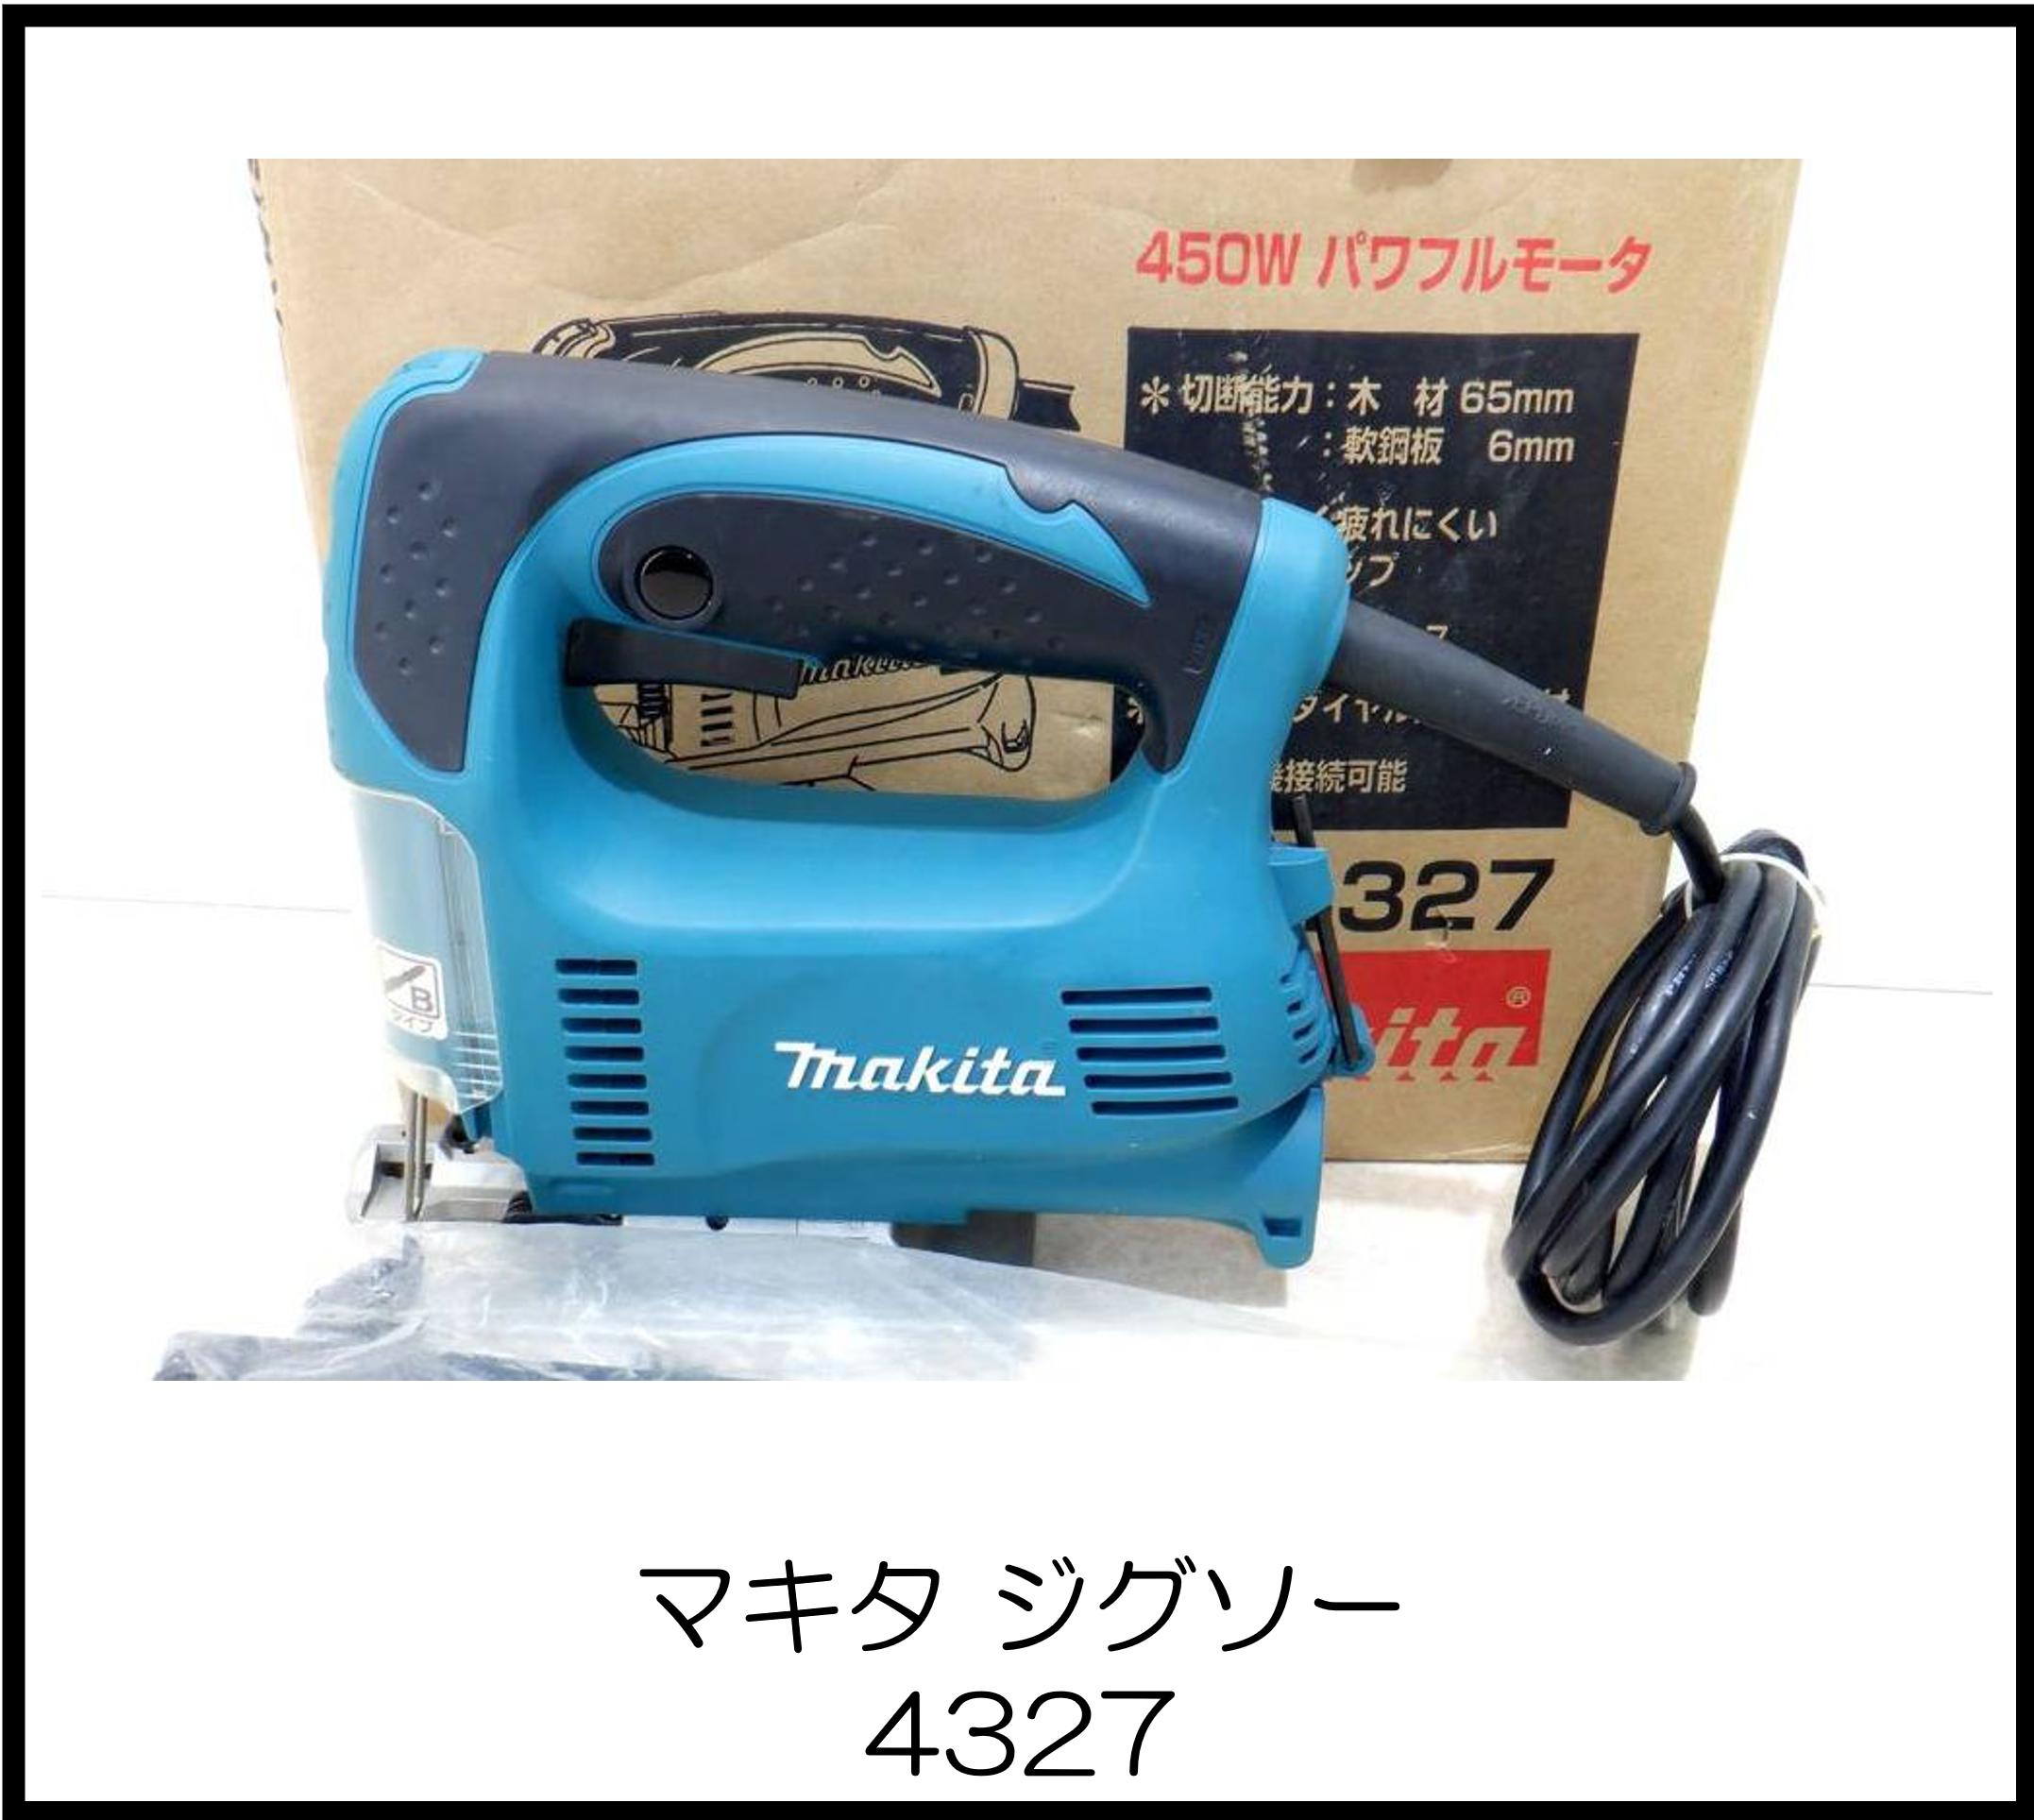 マキタ ジグソー 4327 大阪工具買取エスクライン